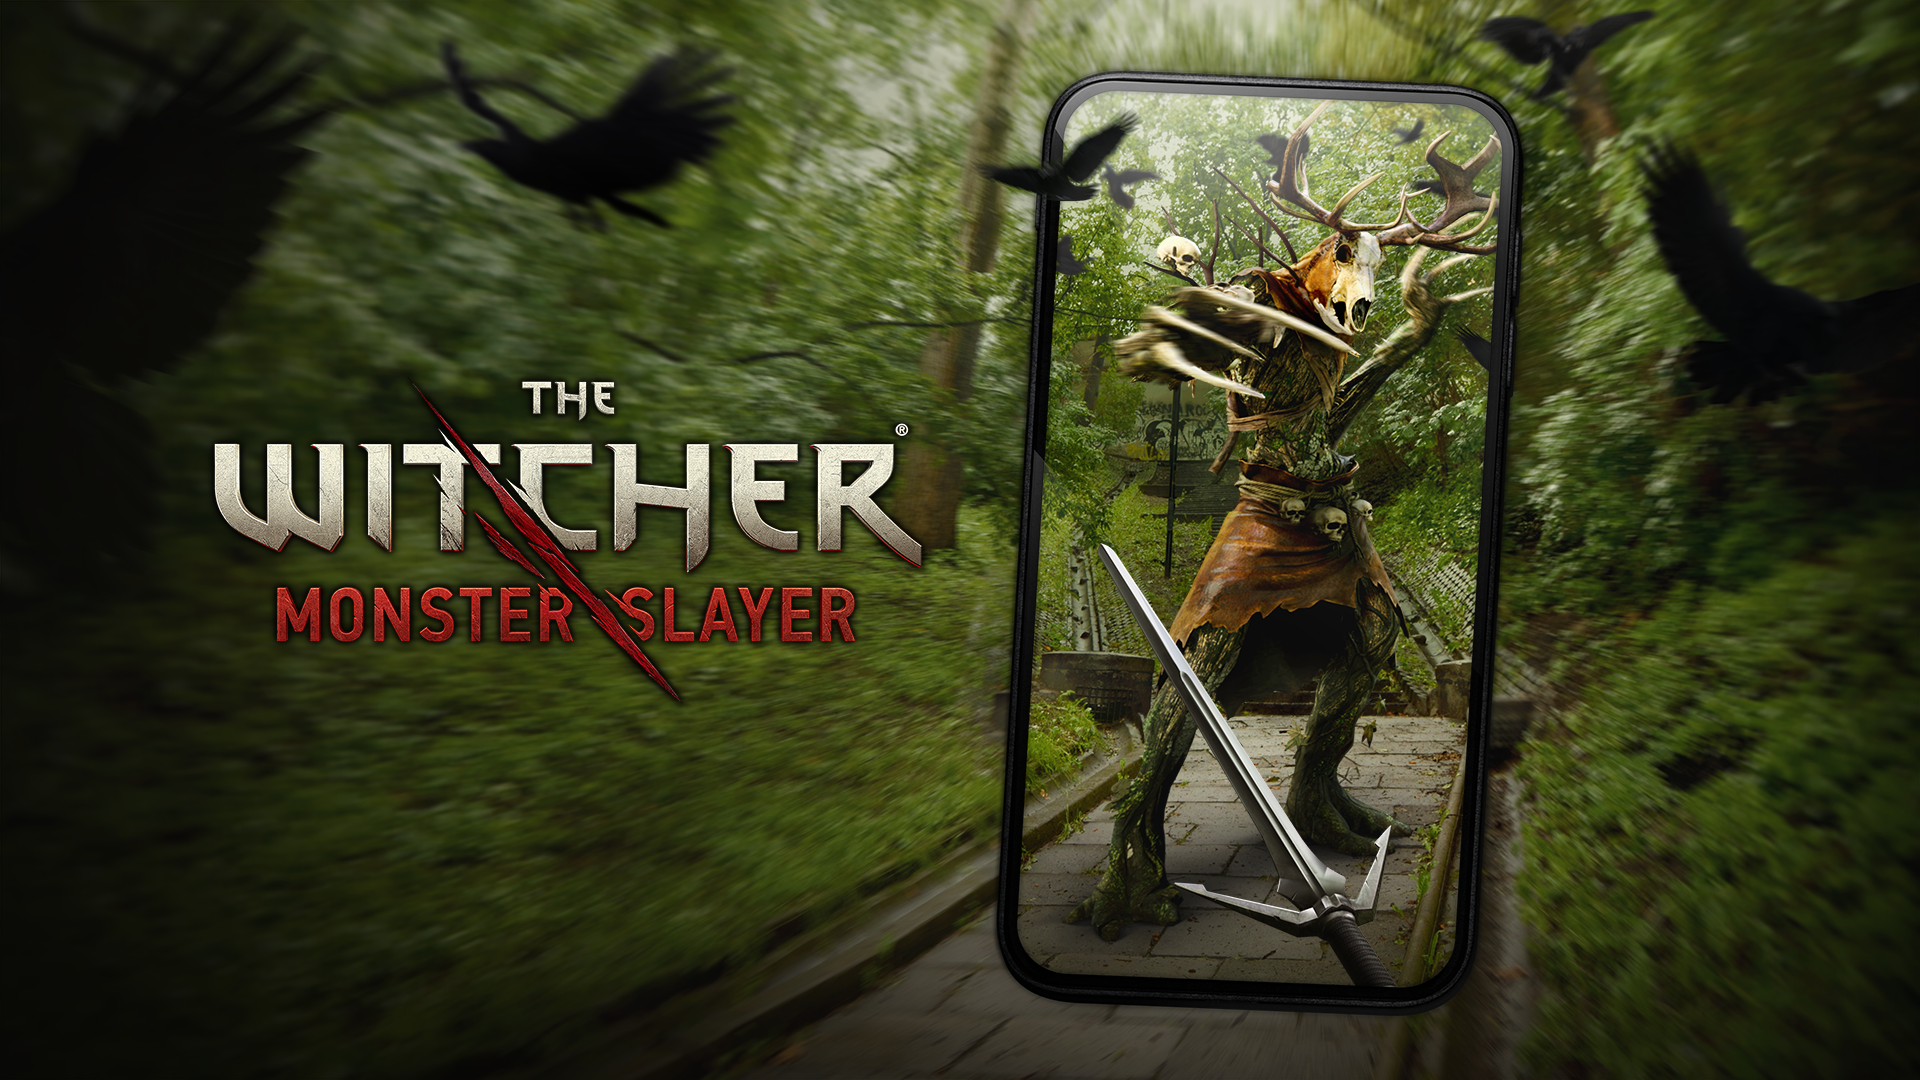 The Witcher: Monster Slayer, nowa gra mobilna ze świata "Wiedźmina". Źródło: Spokko